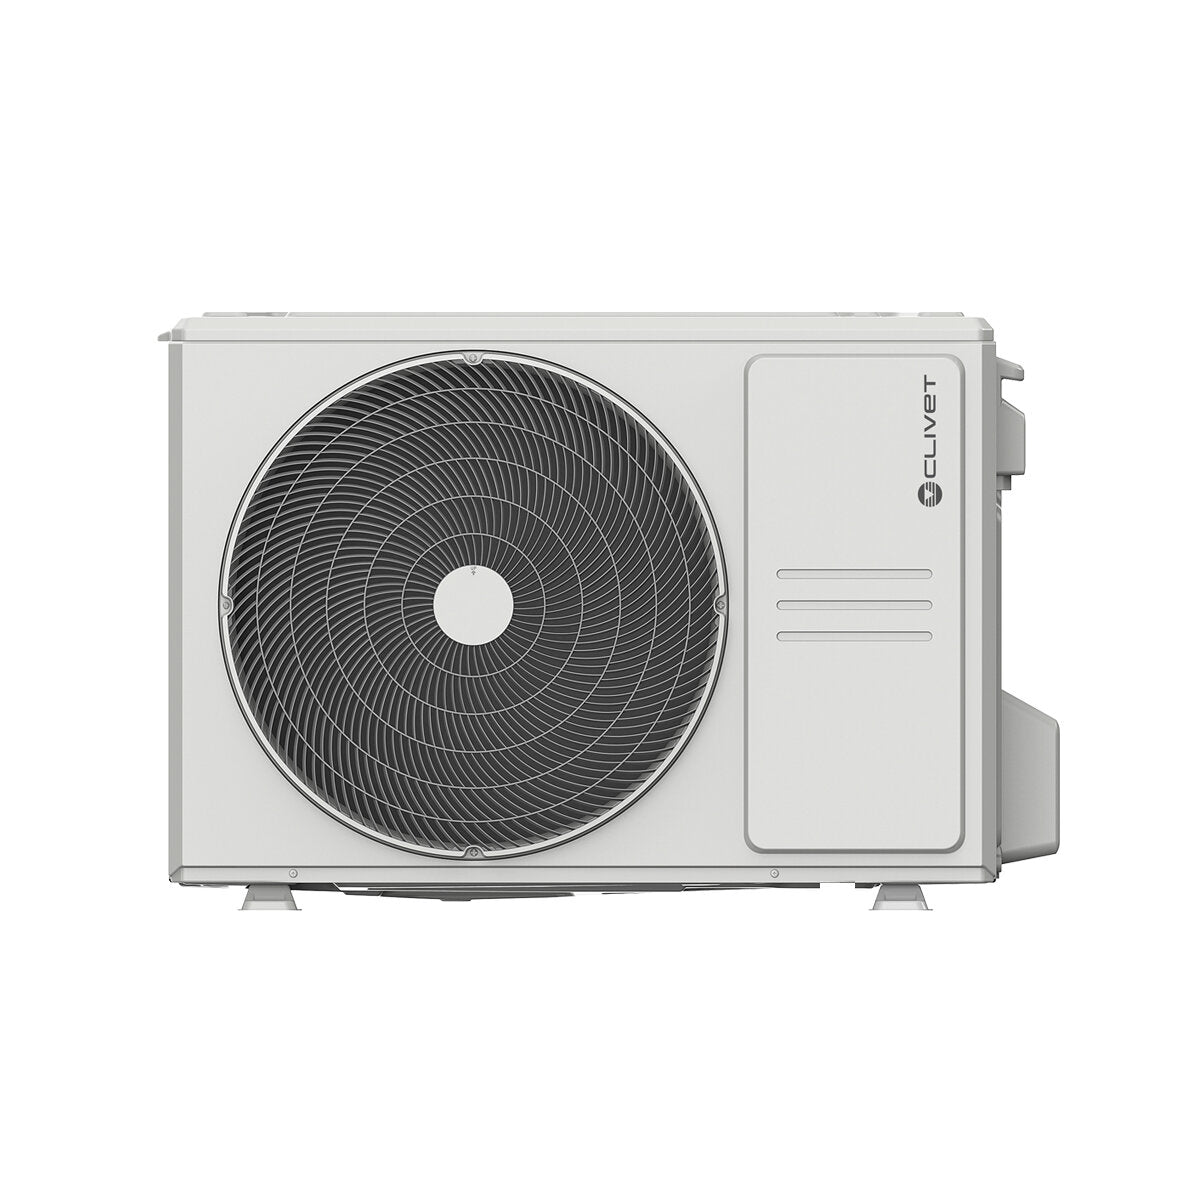 Clivet BOX 2 air conditioner 650x650 4-way dual split cassette 9000+9000 BTU inverter A++ outdoor unit 4.1 kW